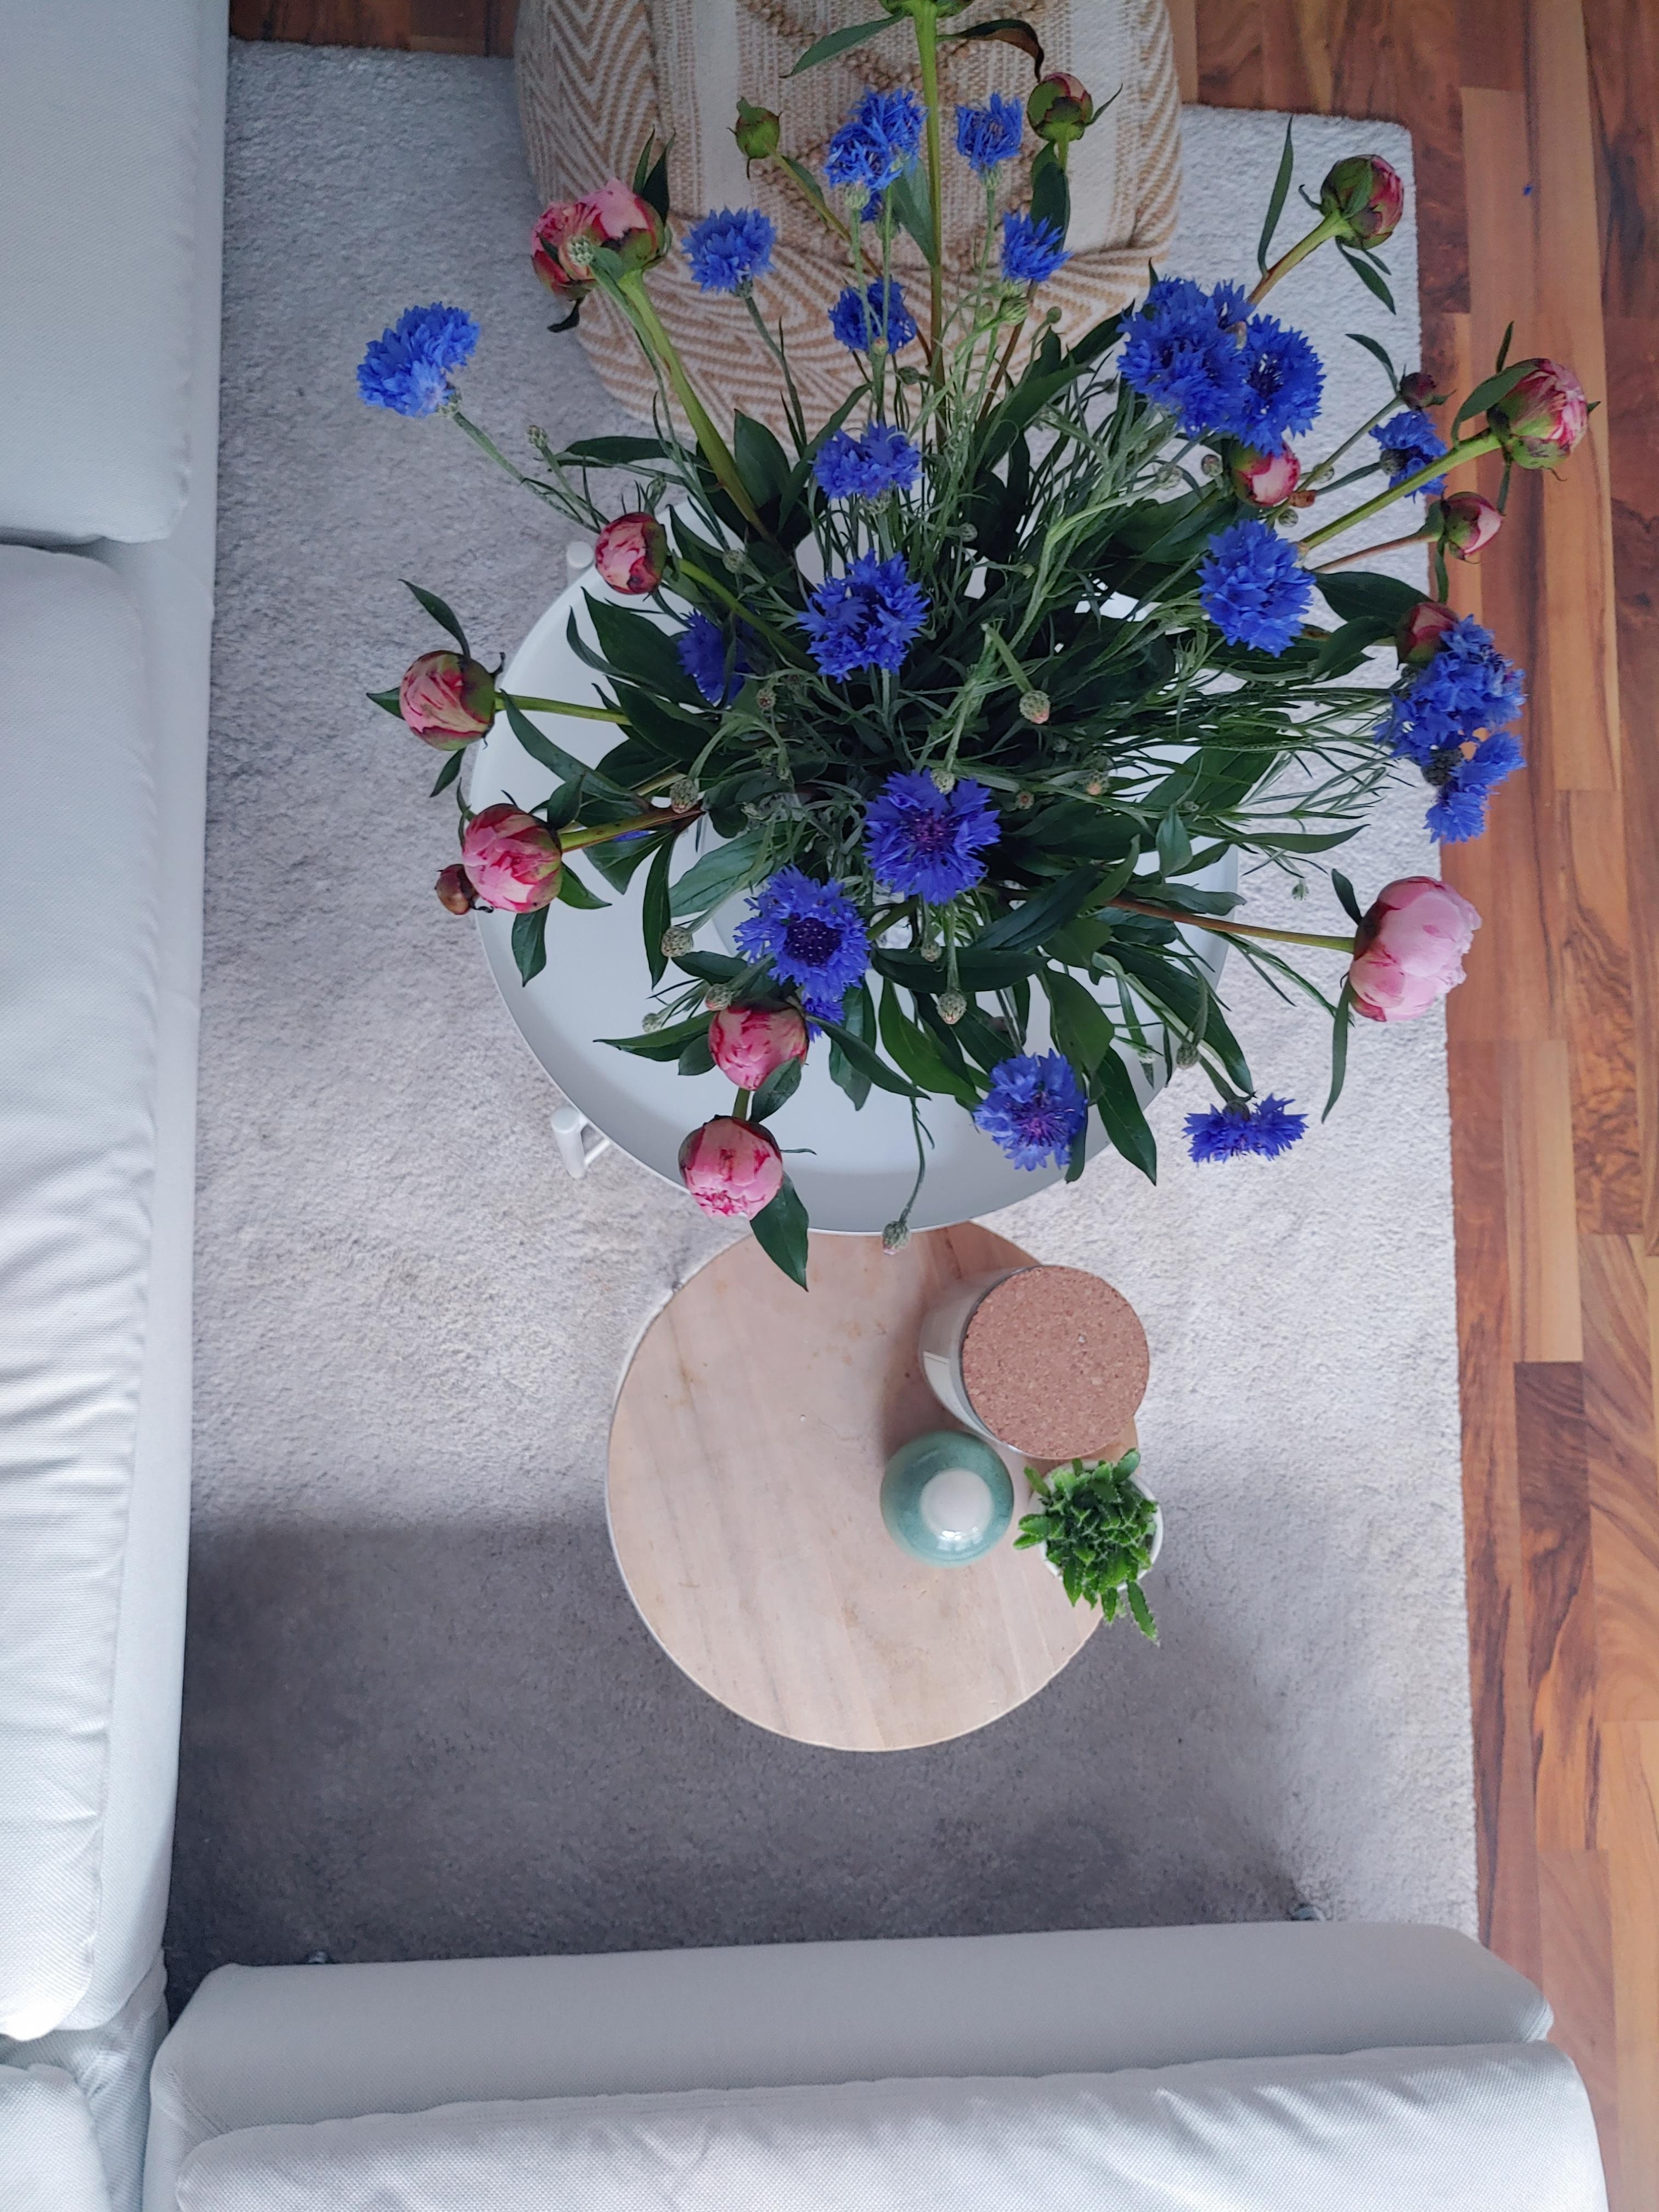 Perspektivenwechsel #freshflowers #blumenliebe #couch #couchtisch #vonoben #wohnzimmer